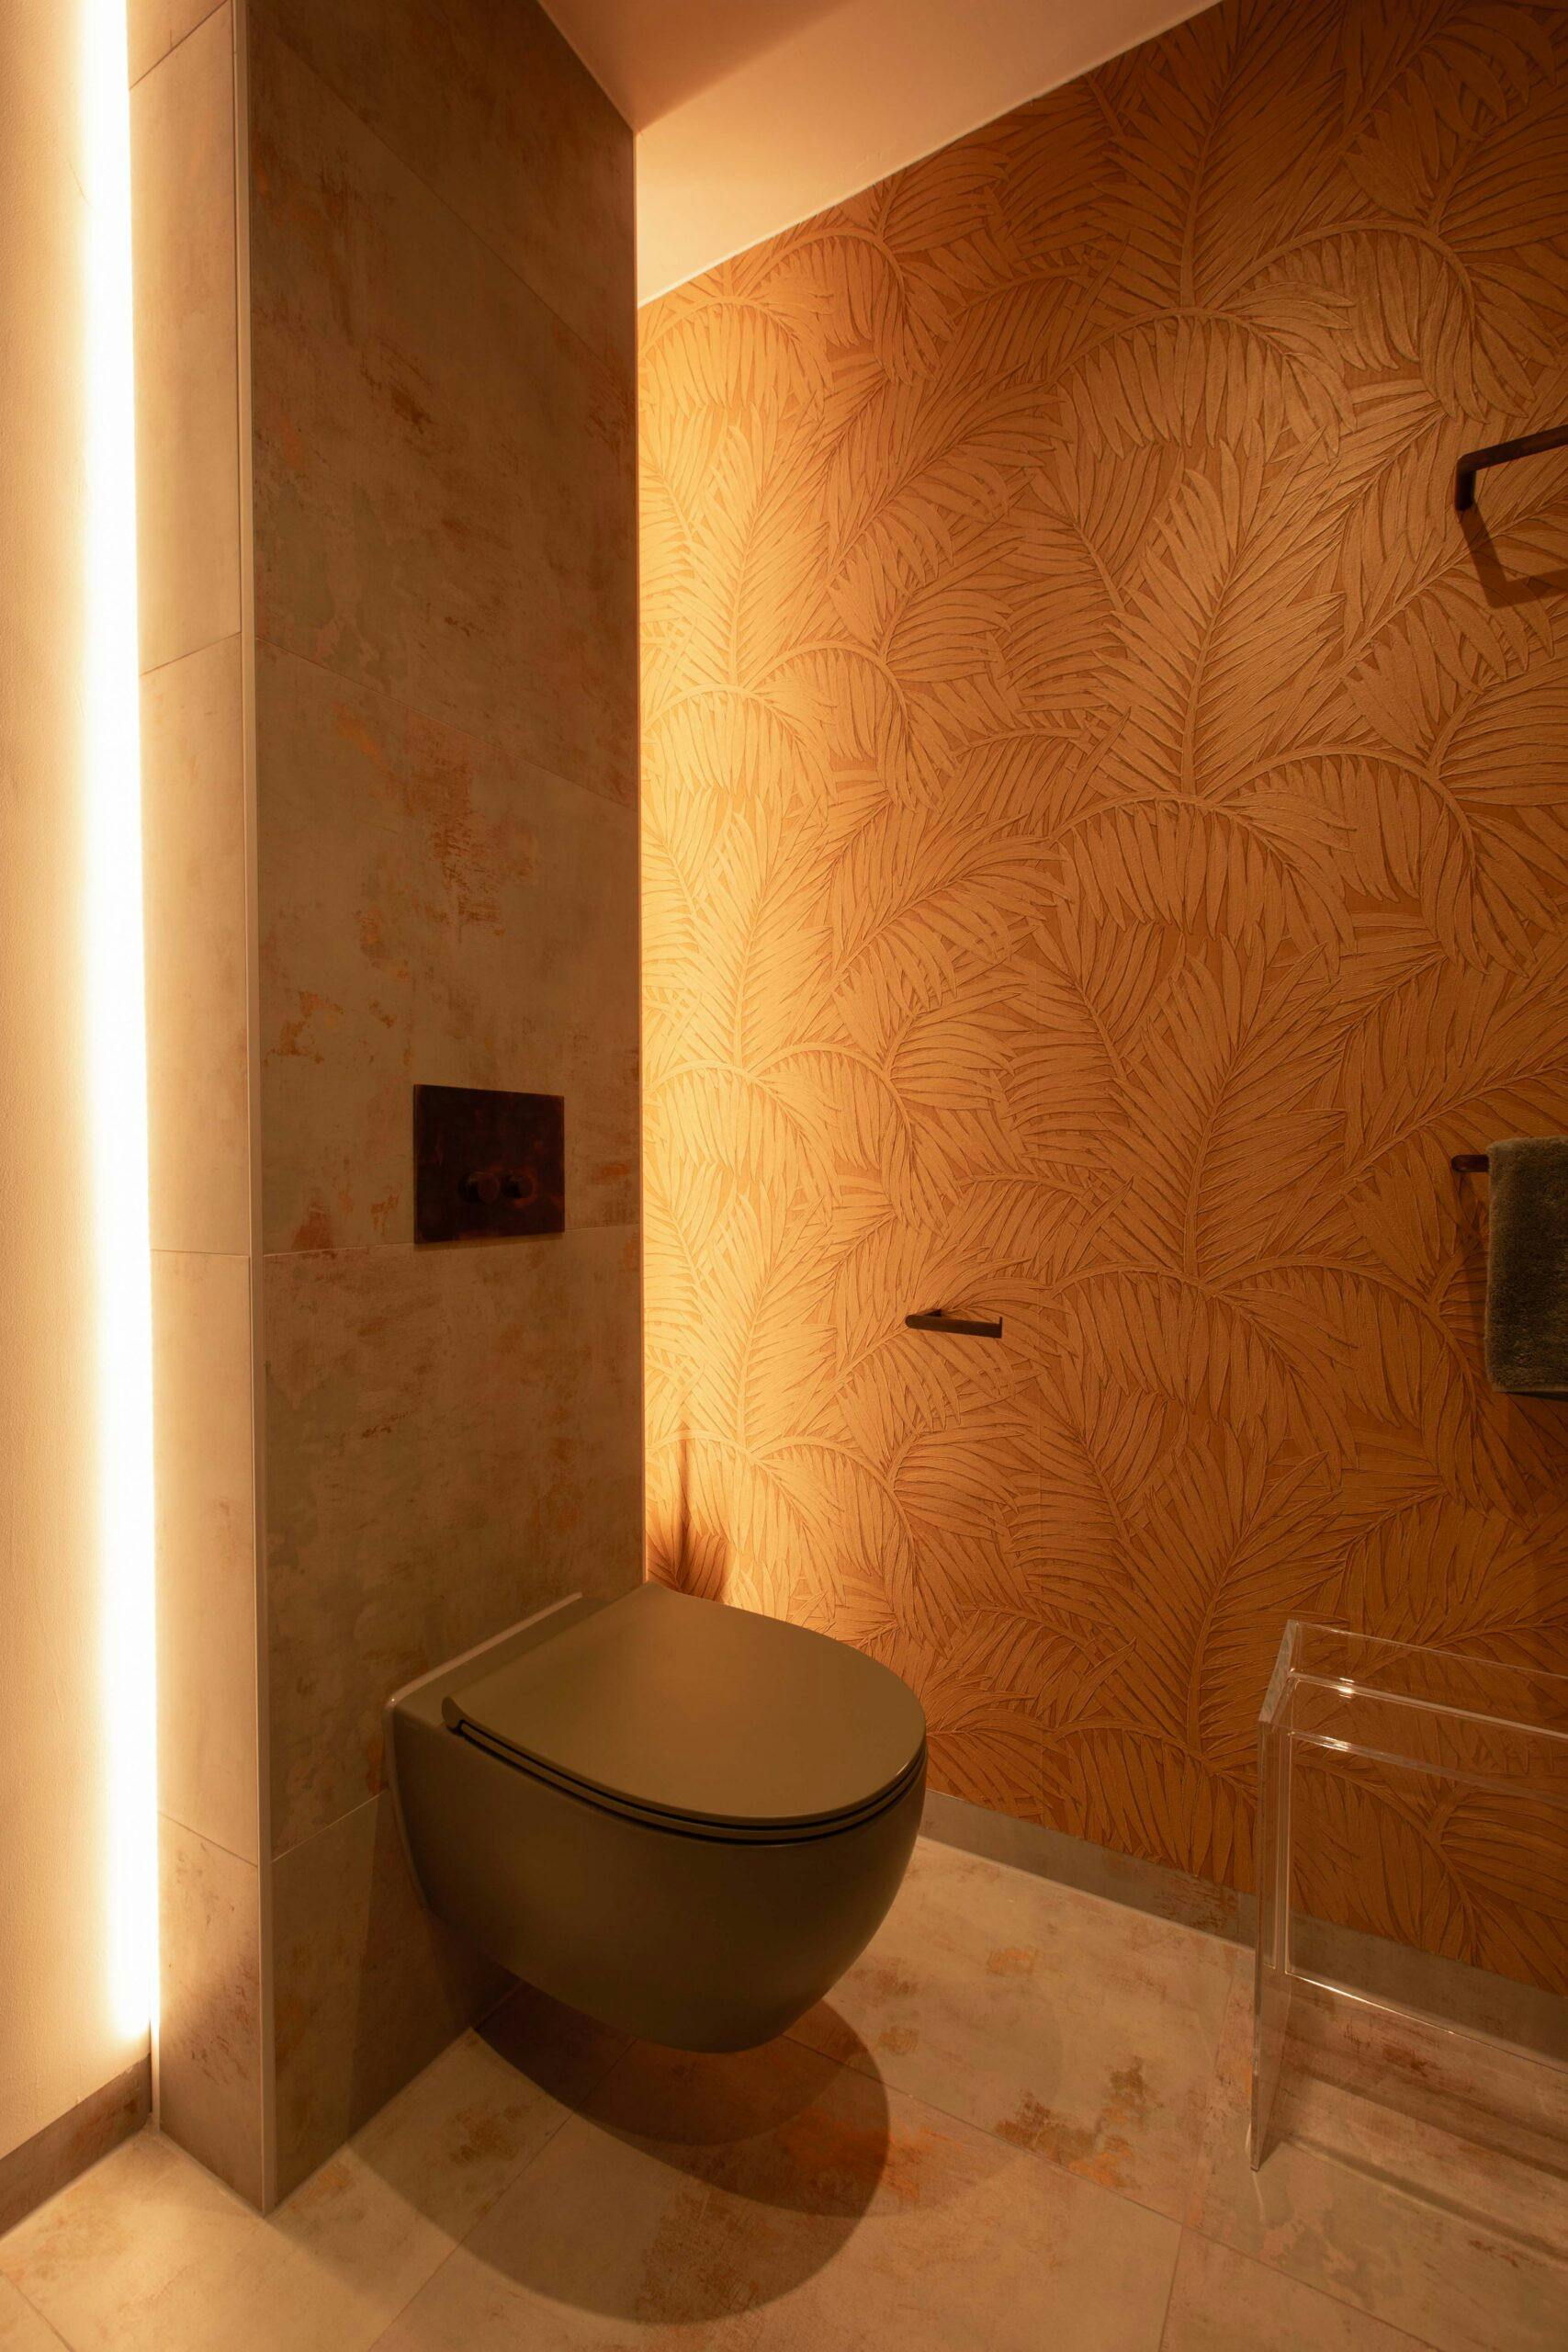 Een toiletruimte waar gebruik is gemaakt van luxe behang op de muren.